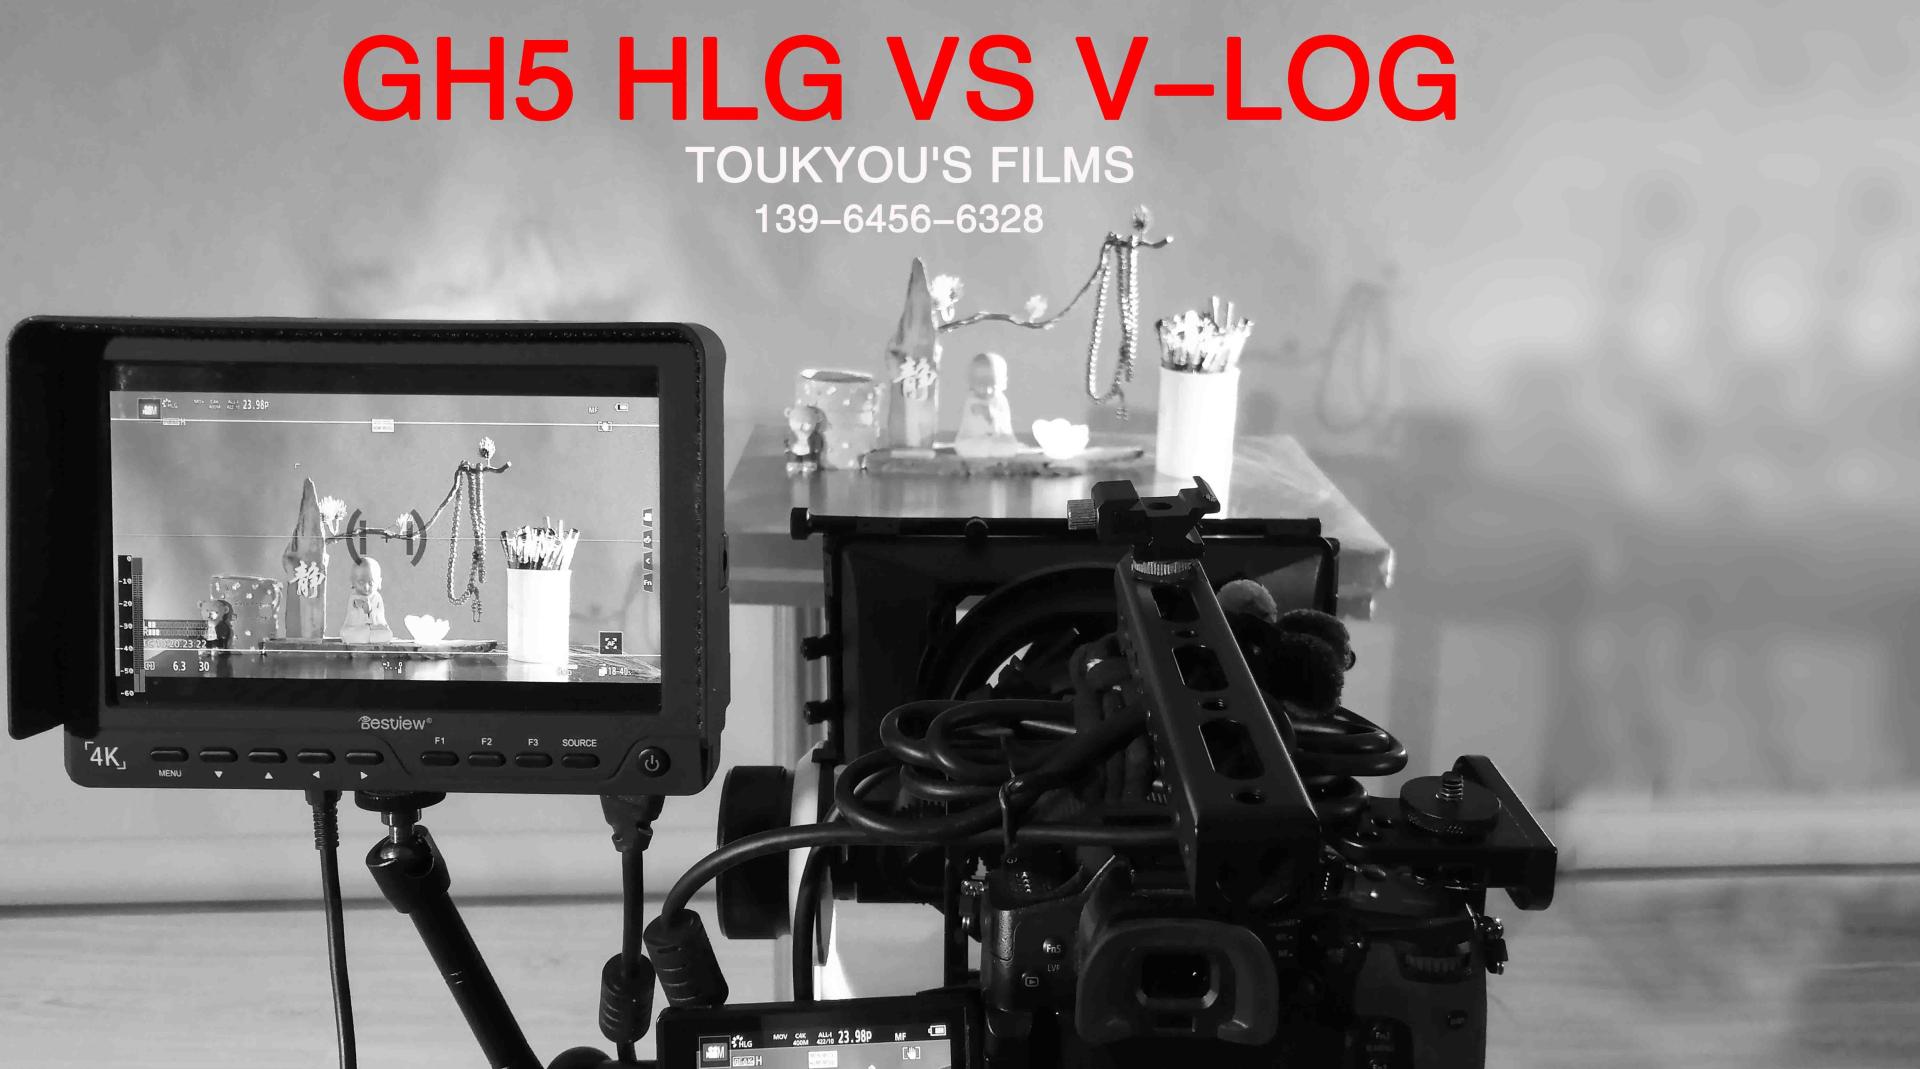 【GH5 HLG VS V-LOG】Toukyou's Films